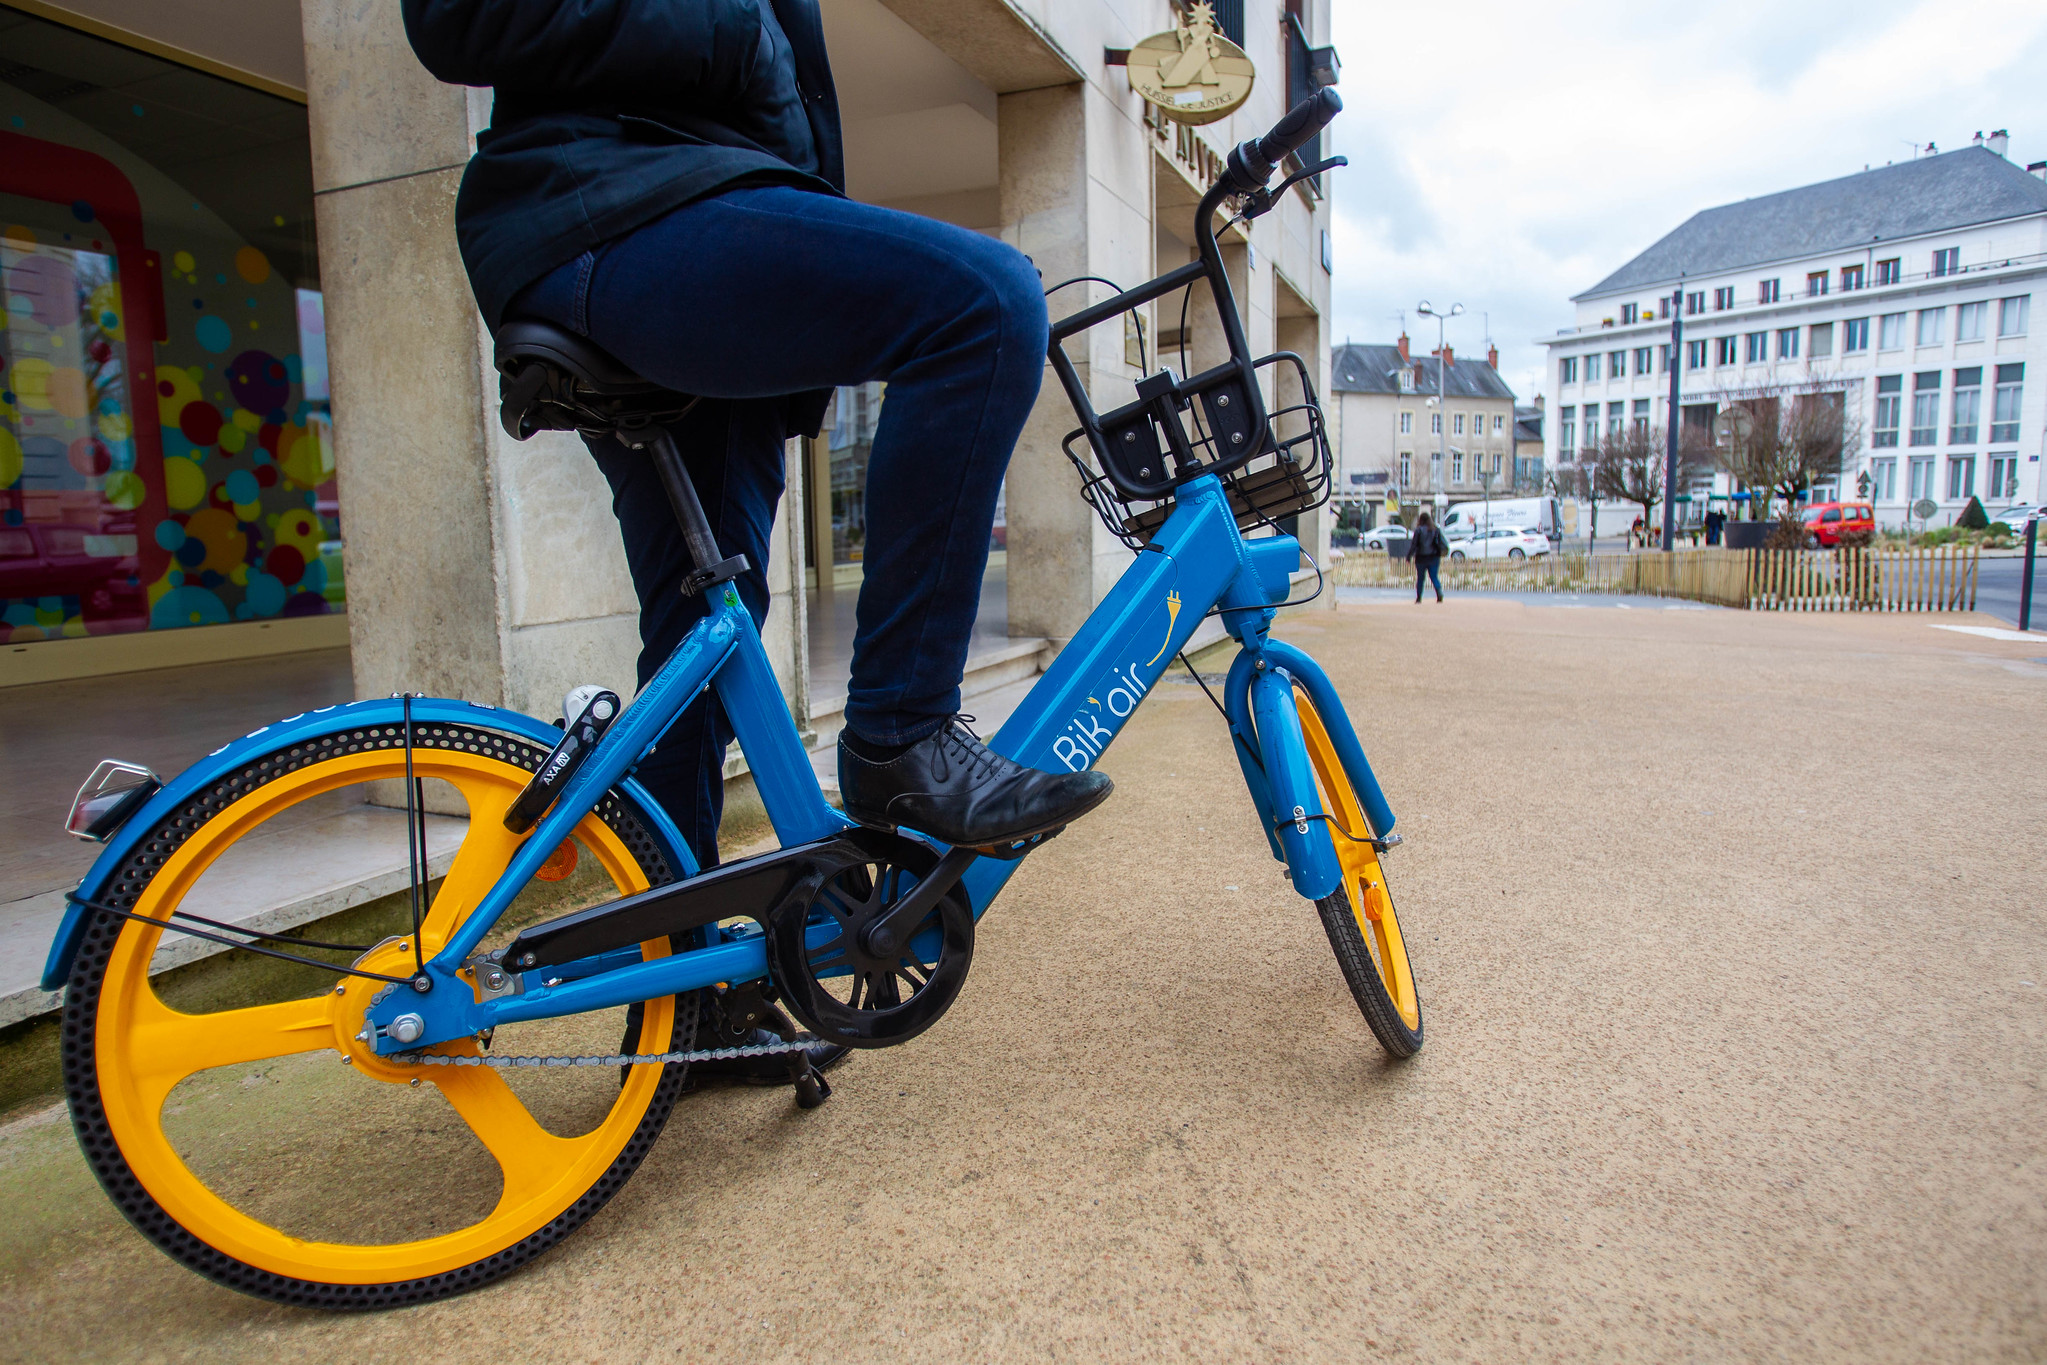 Cet été, Bik'air déploiera une centaine de vélos électriques en libre service dans Nevers.